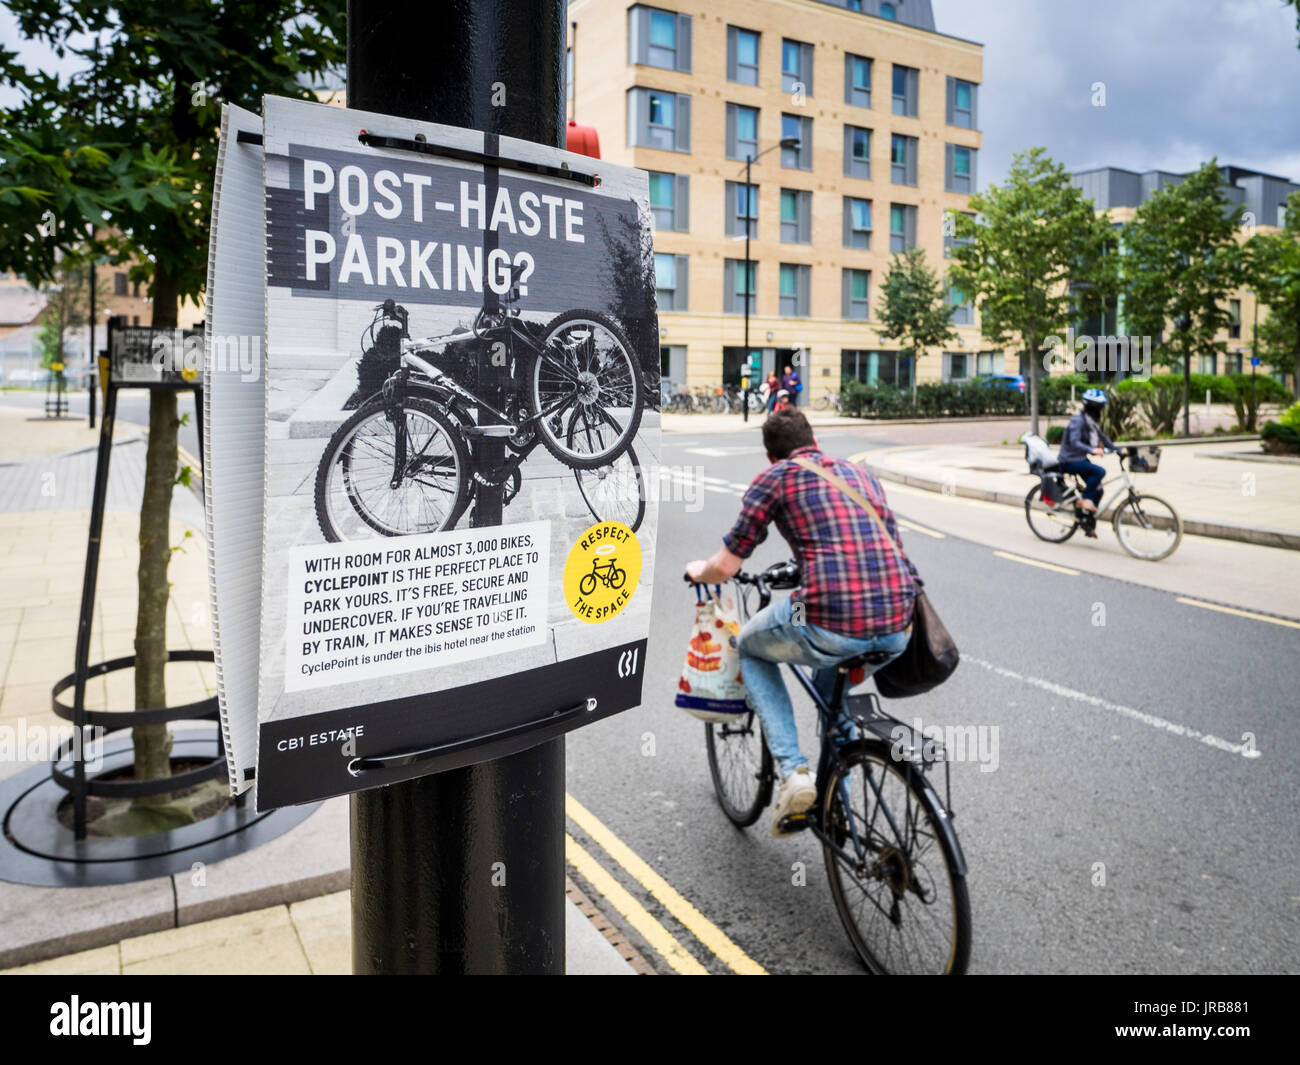 Cambridge - congestión en bicicleta los ciclistas pasar carteles pidiendo a la gente que no fije las motos de calle, tras la apertura de un ciclo cercano parque Foto de stock